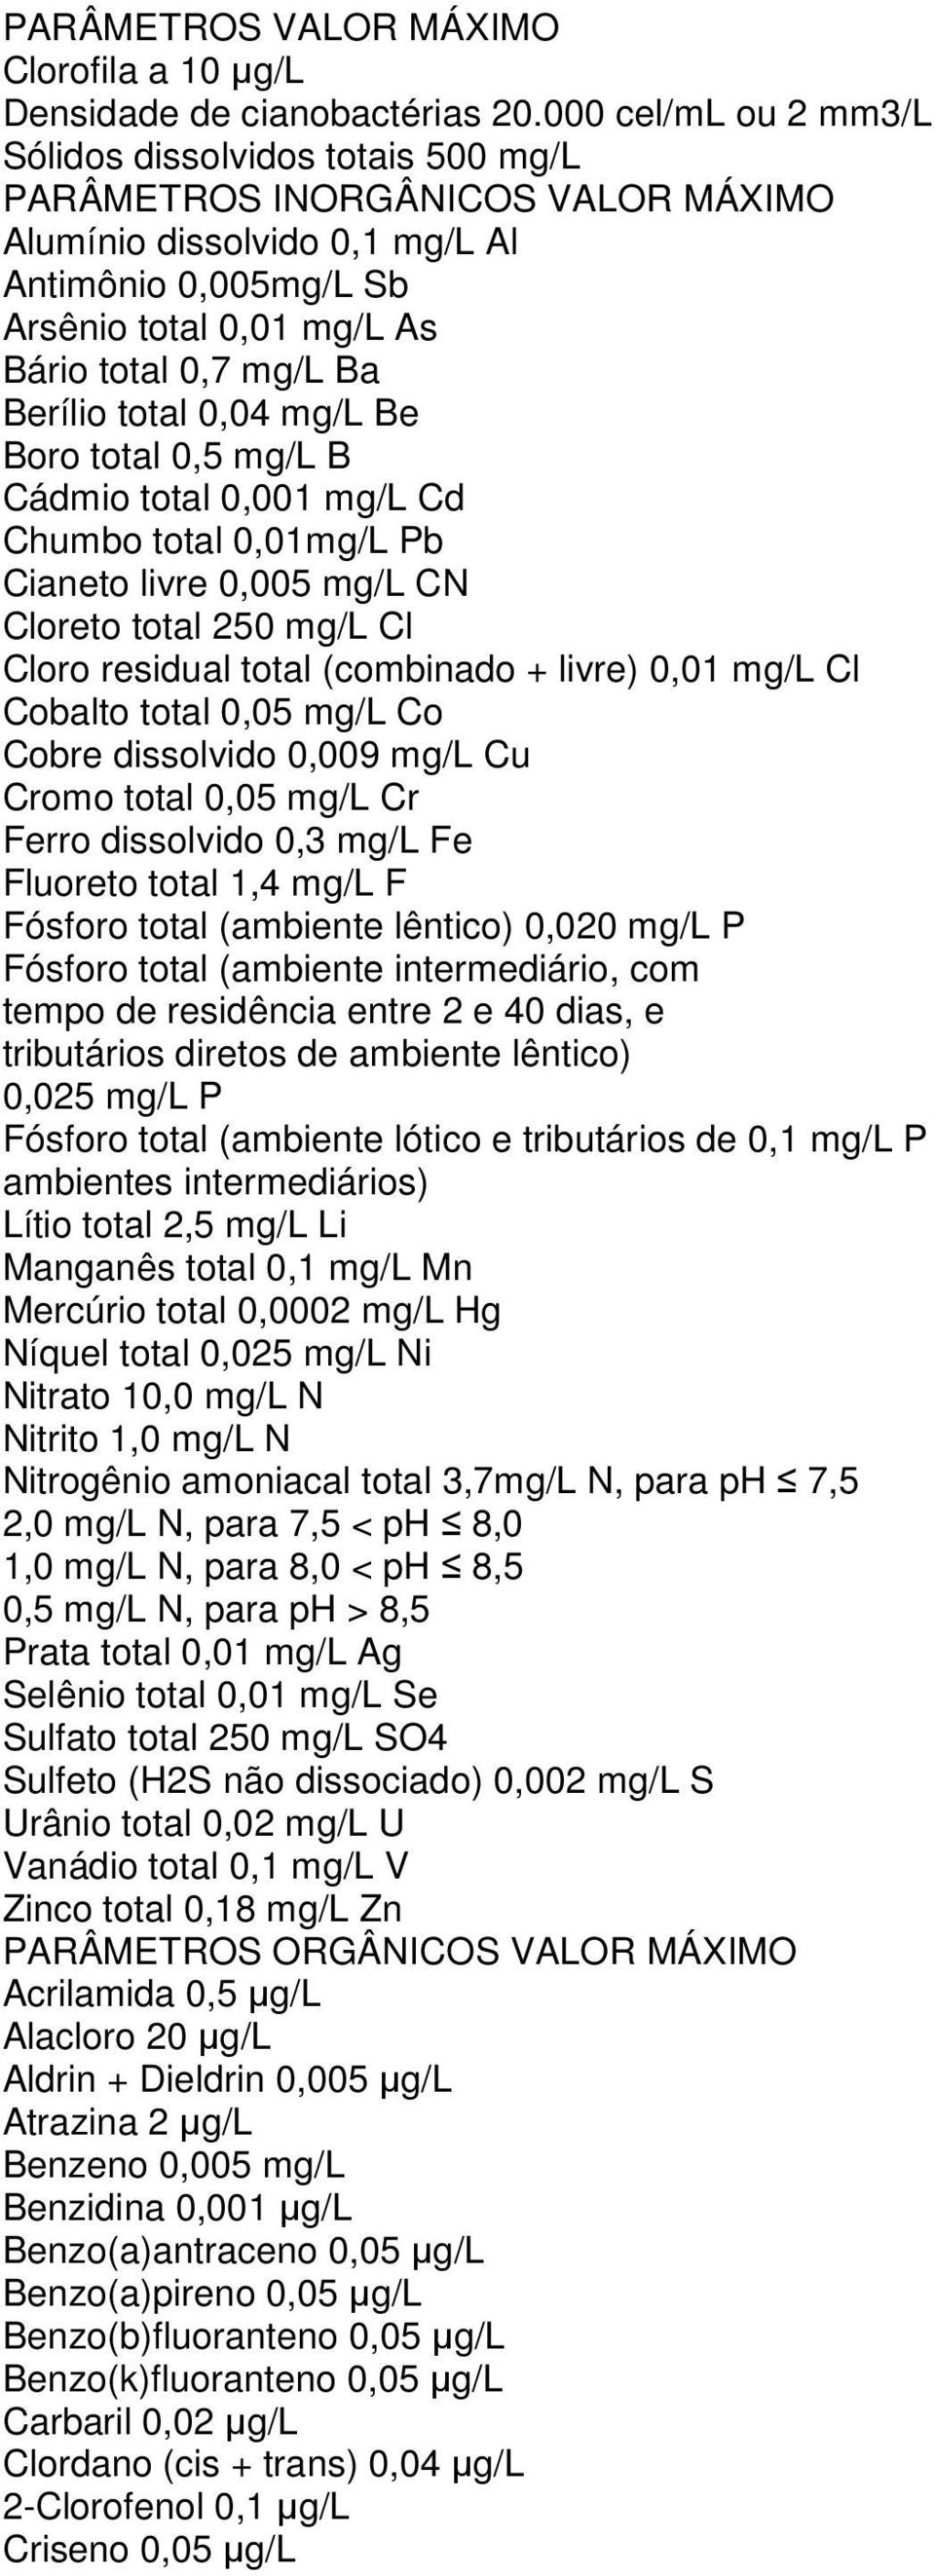 Berílio total 0,04 mg/l Be Boro total 0,5 mg/l B Cádmio total 0,001 mg/l Cd Chumbo total 0,01mg/L Pb Cianeto livre 0,005 mg/l CN Cloreto total 250 mg/l Cl Cloro residual total (combinado + livre)